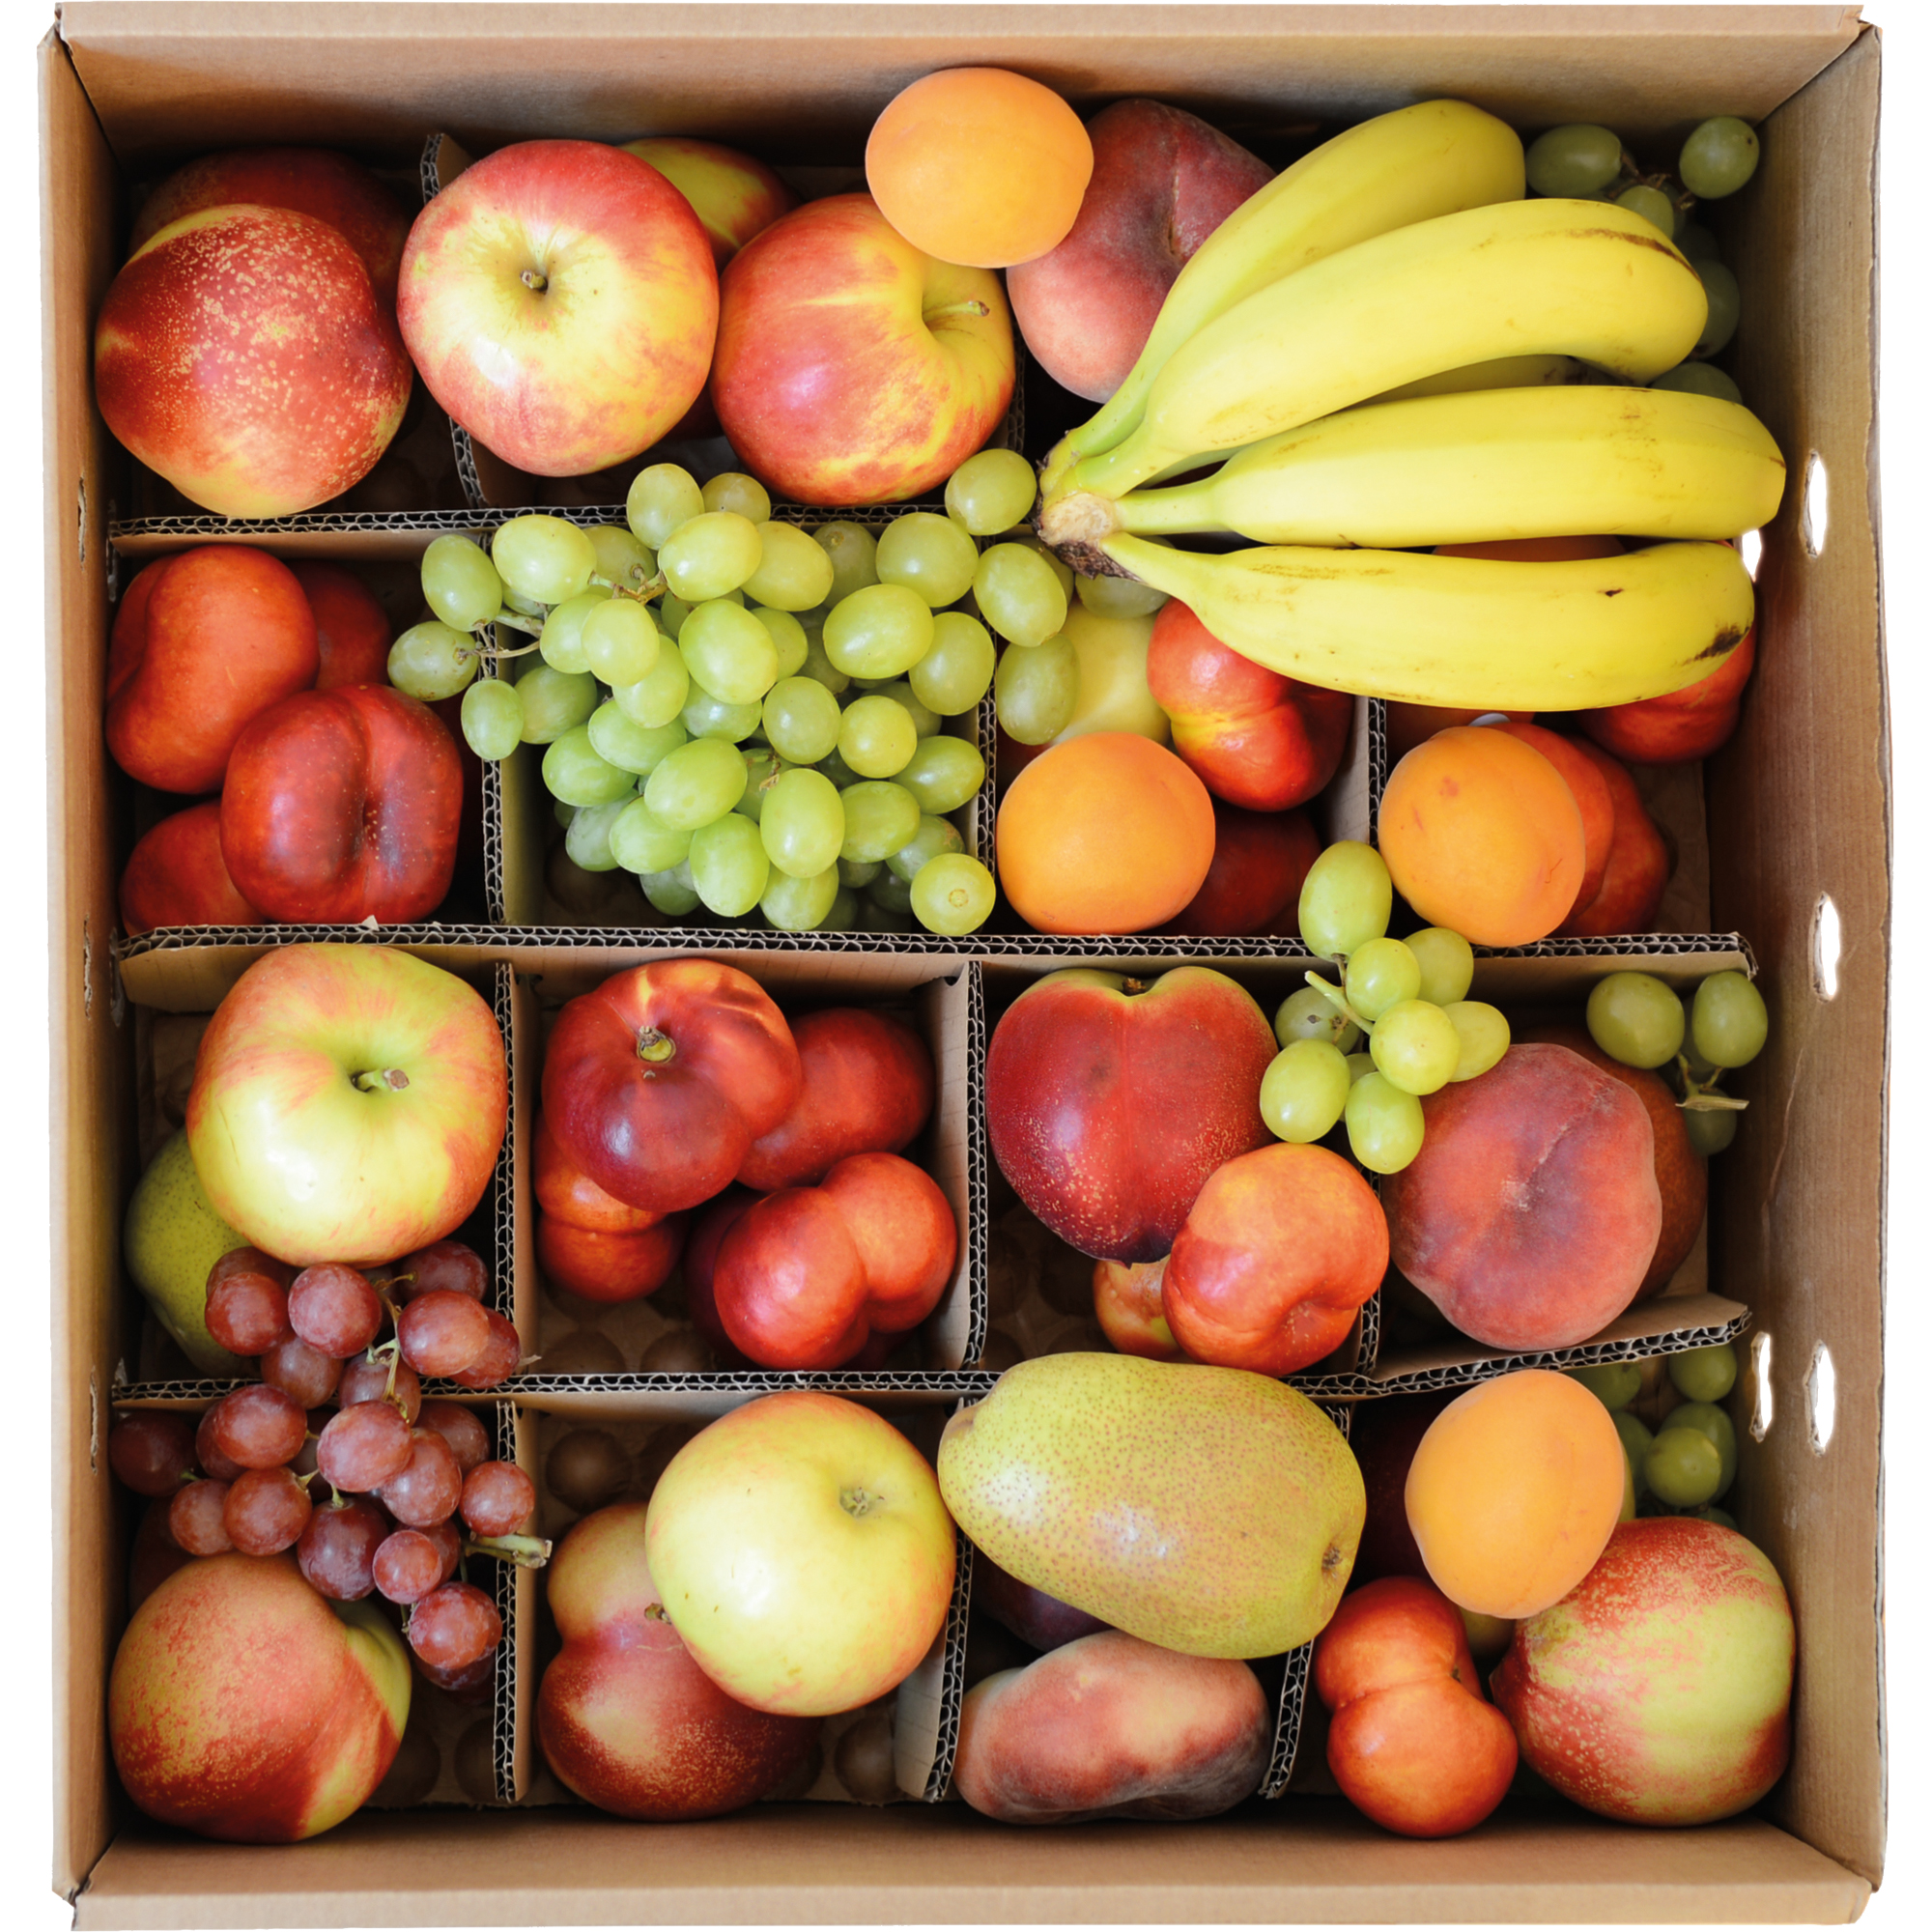 Obstpaket Box für ca. 8 Personen